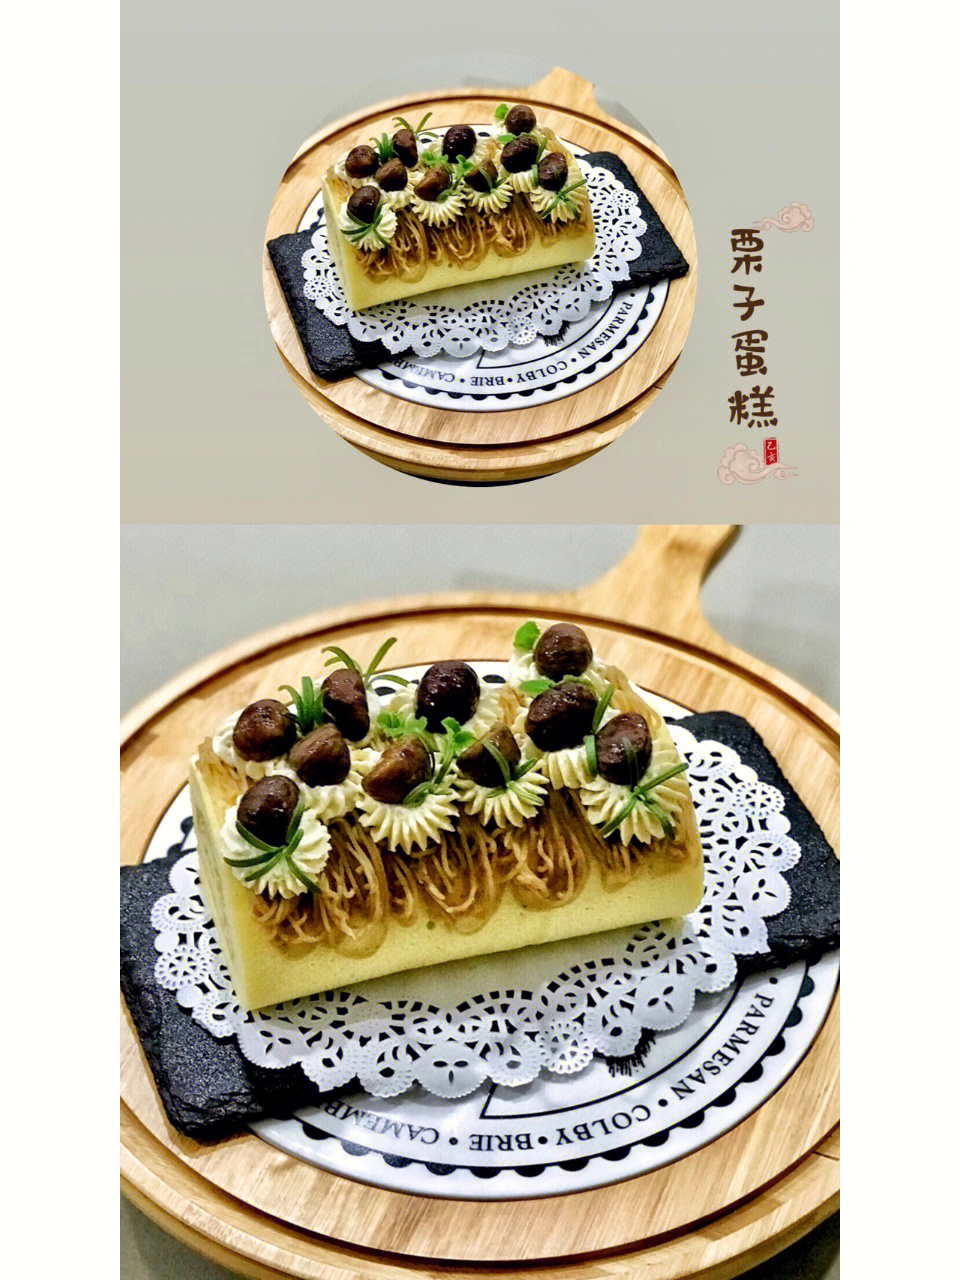 栗子蛋糕